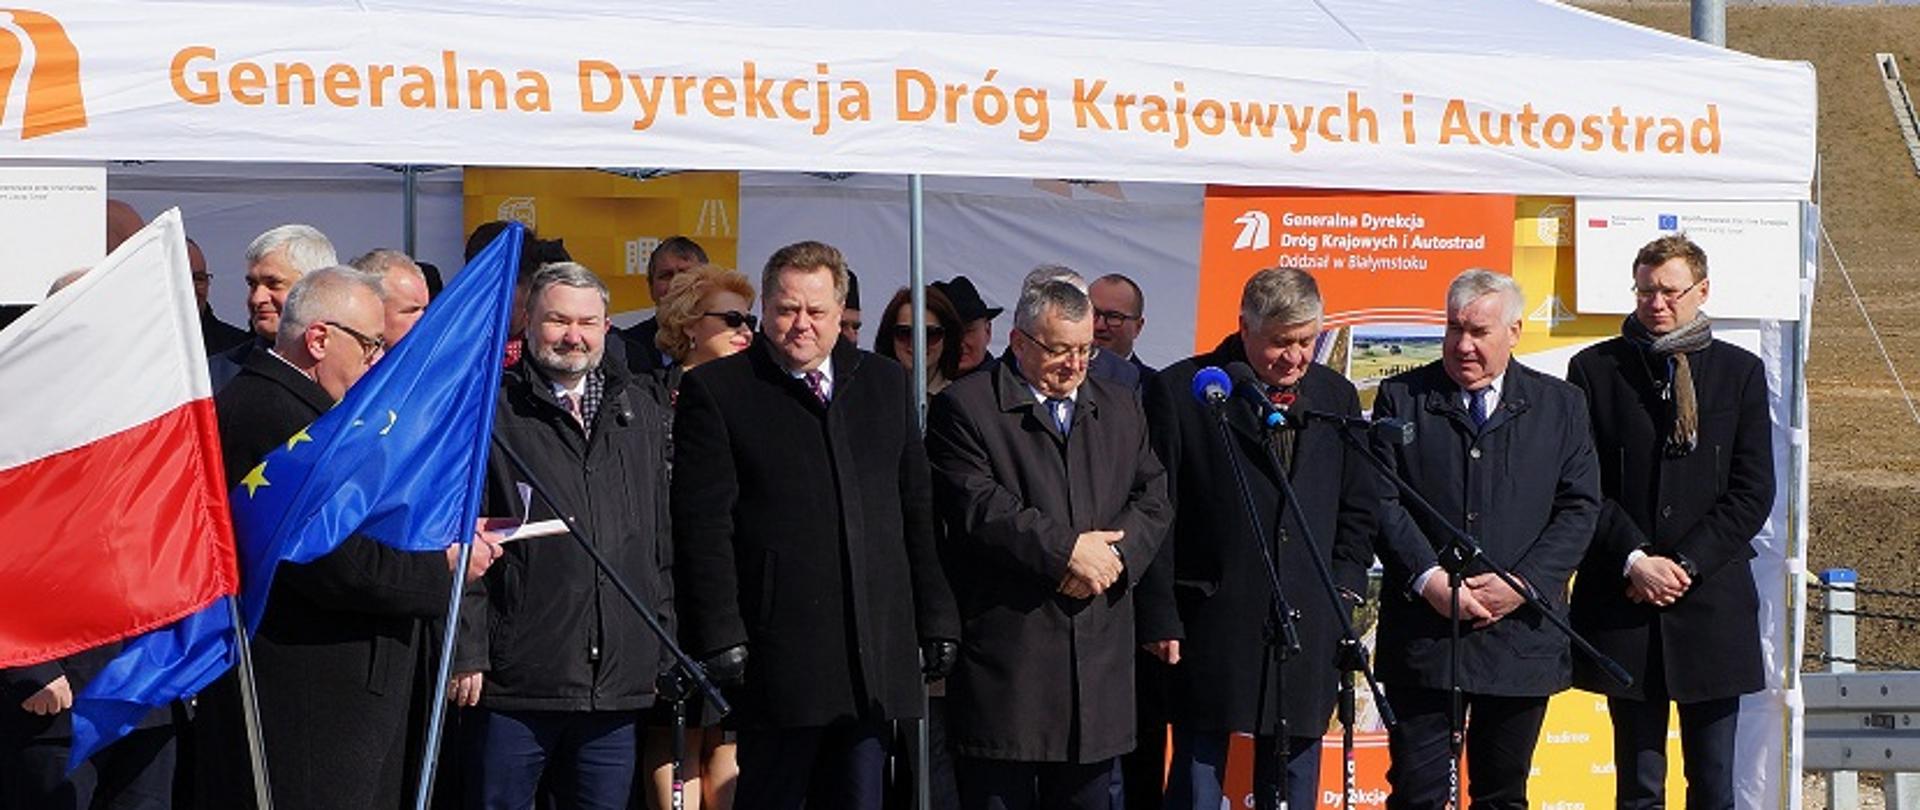 Na zdjęciu znajduję się grupa osób wśród nich między innymi Dyrektor Programów Infrastrukturalnych w Ministerstwie Inwestycji i Rozwoju Jarosław Orliński. Stoją pod białym namiotem z napisem "Generalna Dyrekcja Dróg Krajowych i Autostrad". Z boku stoi flaga Polski i Unii Europejskiej. 